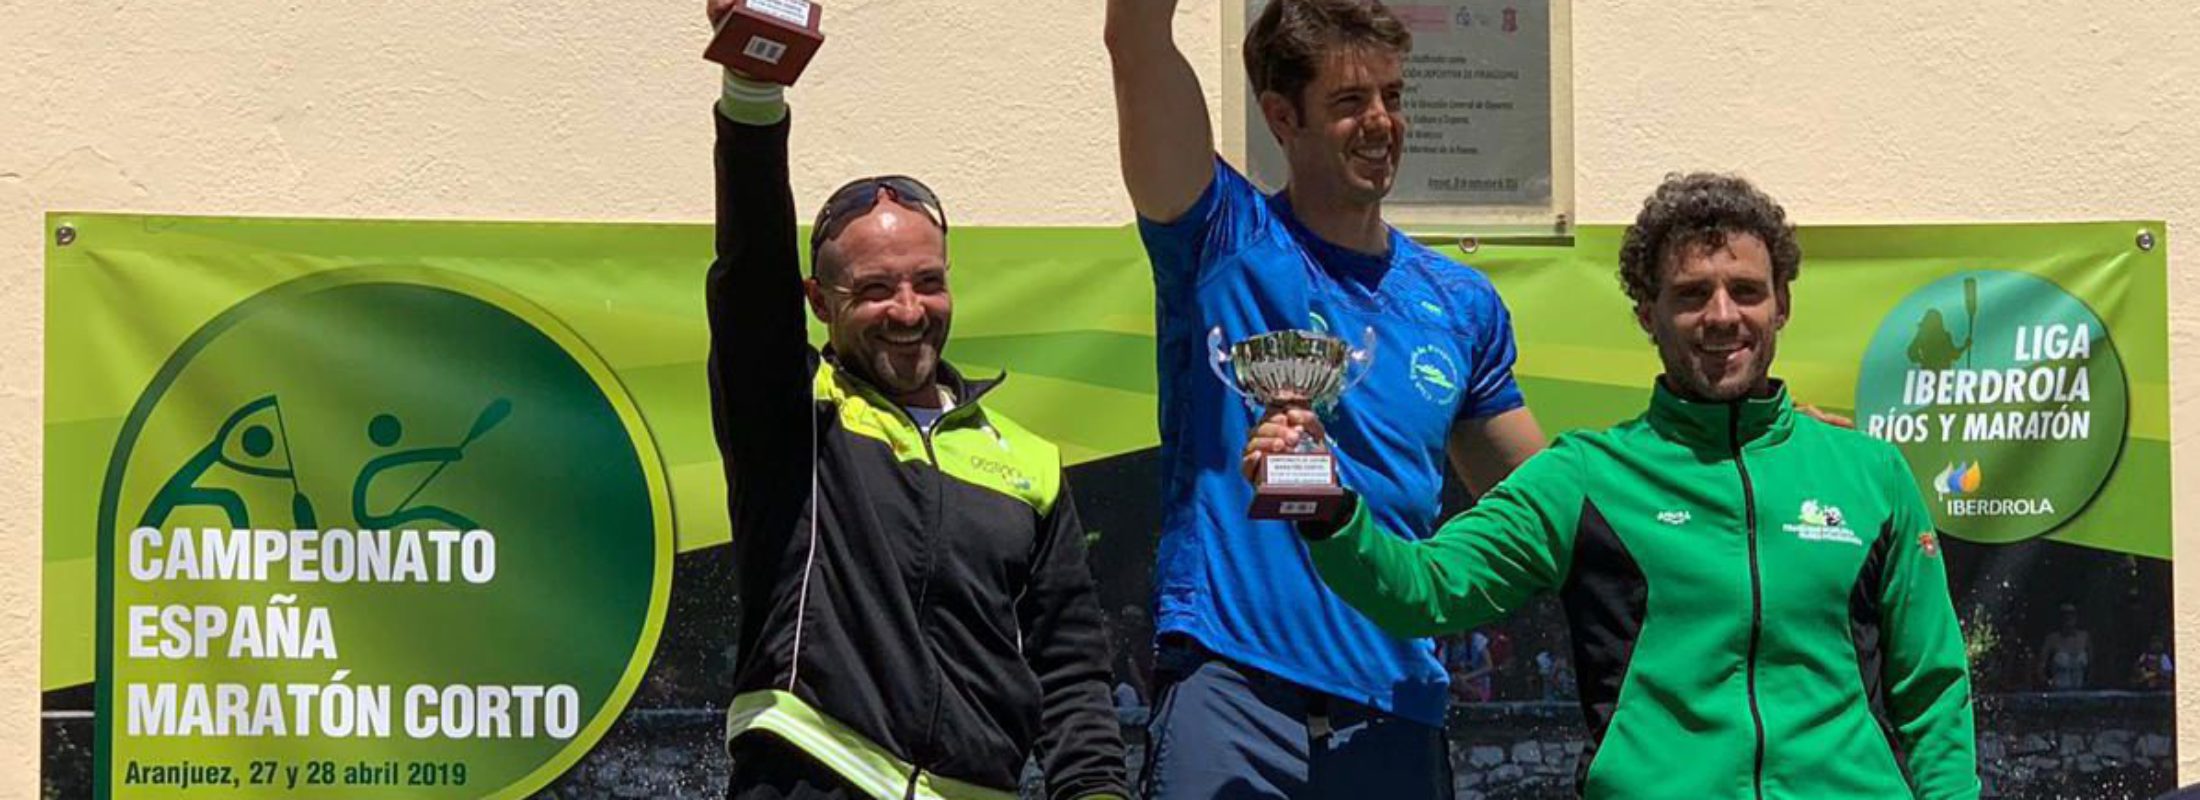 El Piragüismo Pamplona – Iruñea Piraguismoa bronce en el Campeonato de España de Maratón Corto. Enrique Serrate subcampeón de España.